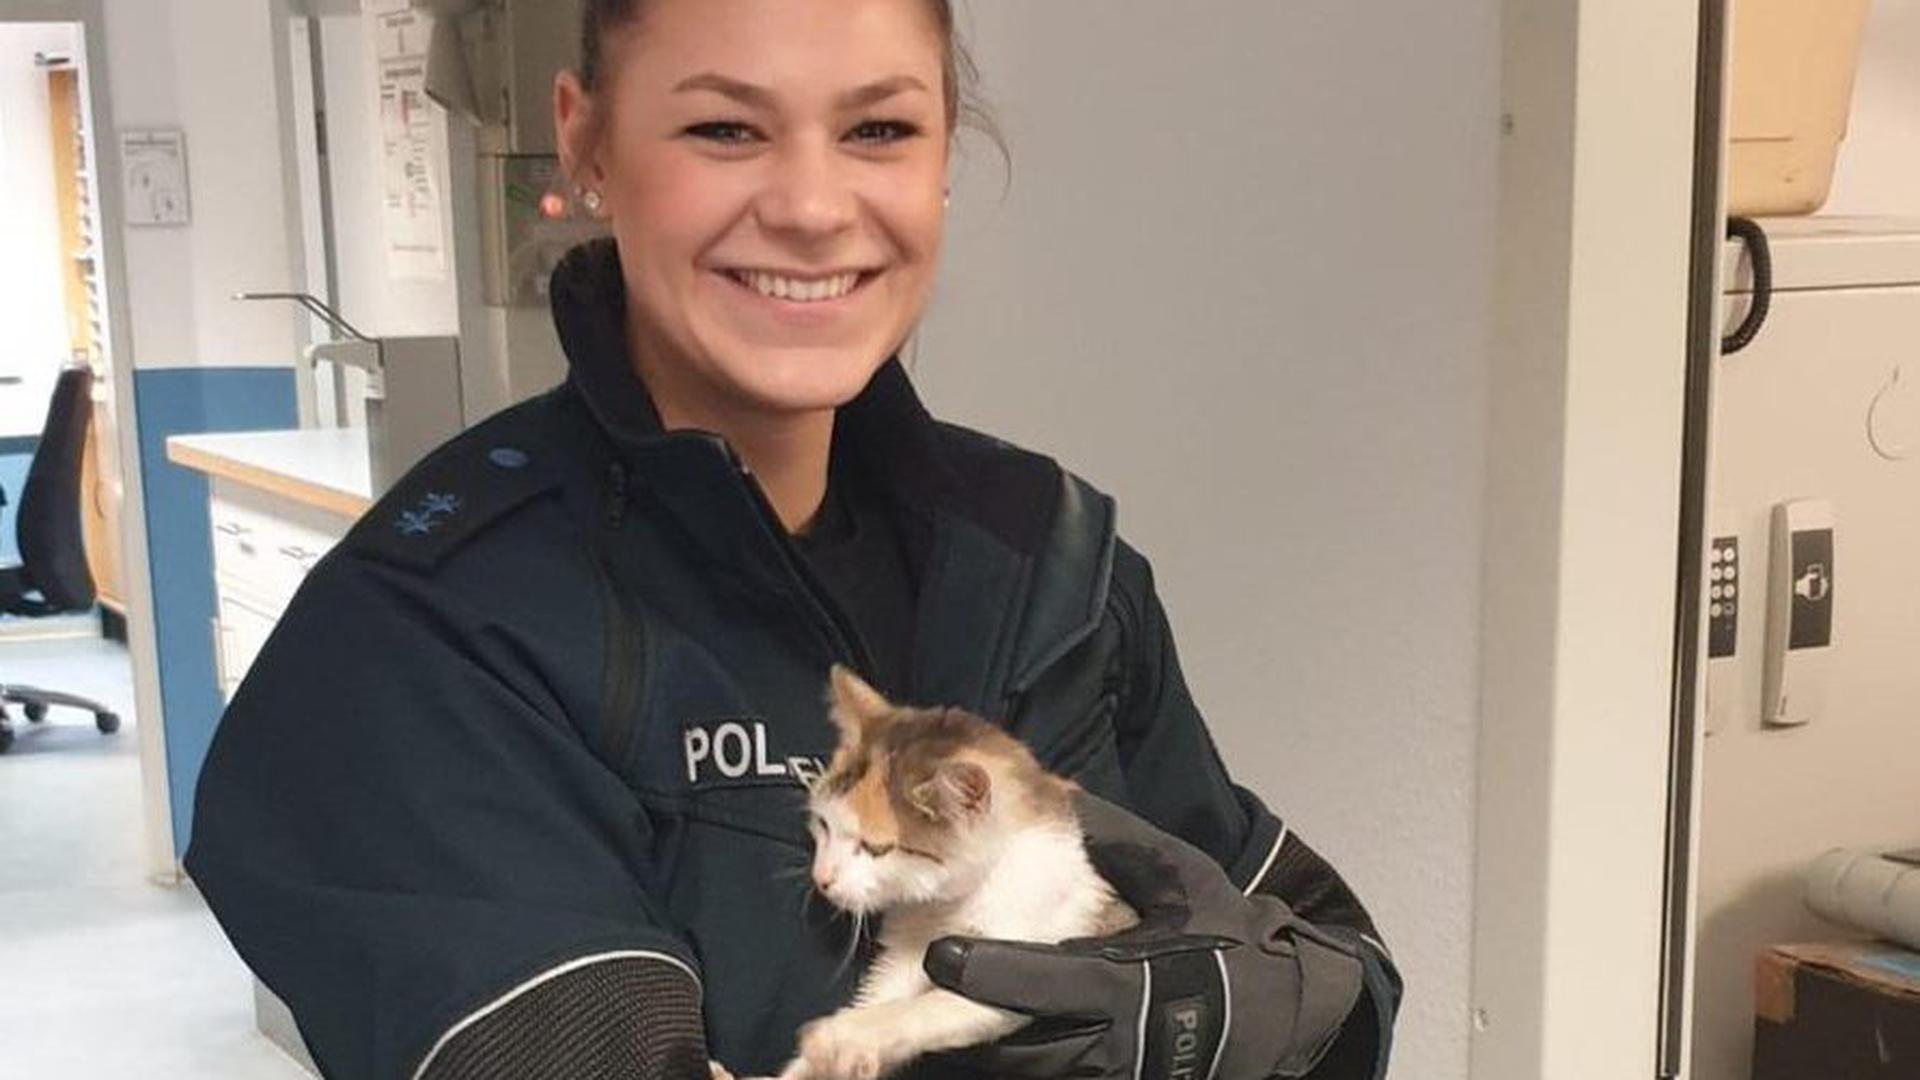 Liebe auf den ersten Blick: Polizeimeisterin Laura Luft und die gefundene Katze.